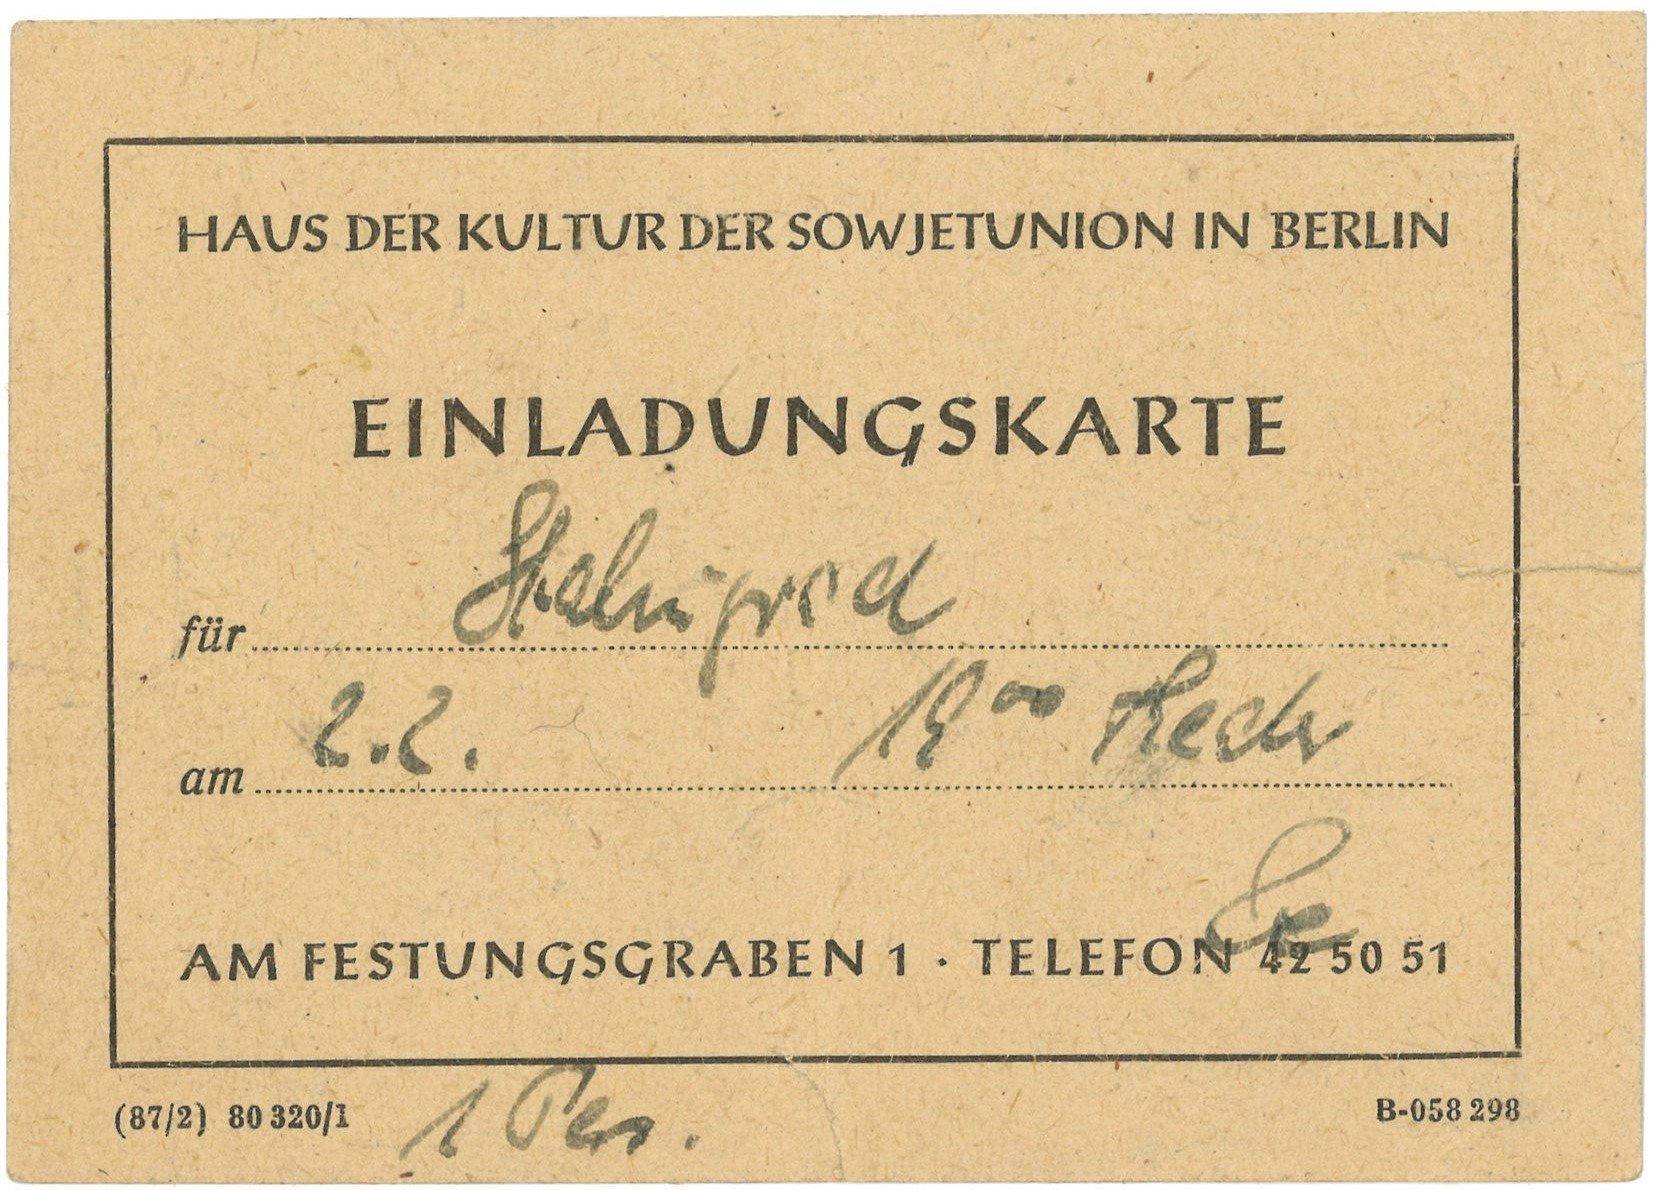 Einladungskarte zum Film "Stalingrad" im Haus der Kultur der Sowjetunion in Berlin (Landesgeschichtliche Vereinigung für die Mark Brandenburg e.V., Archiv CC BY)